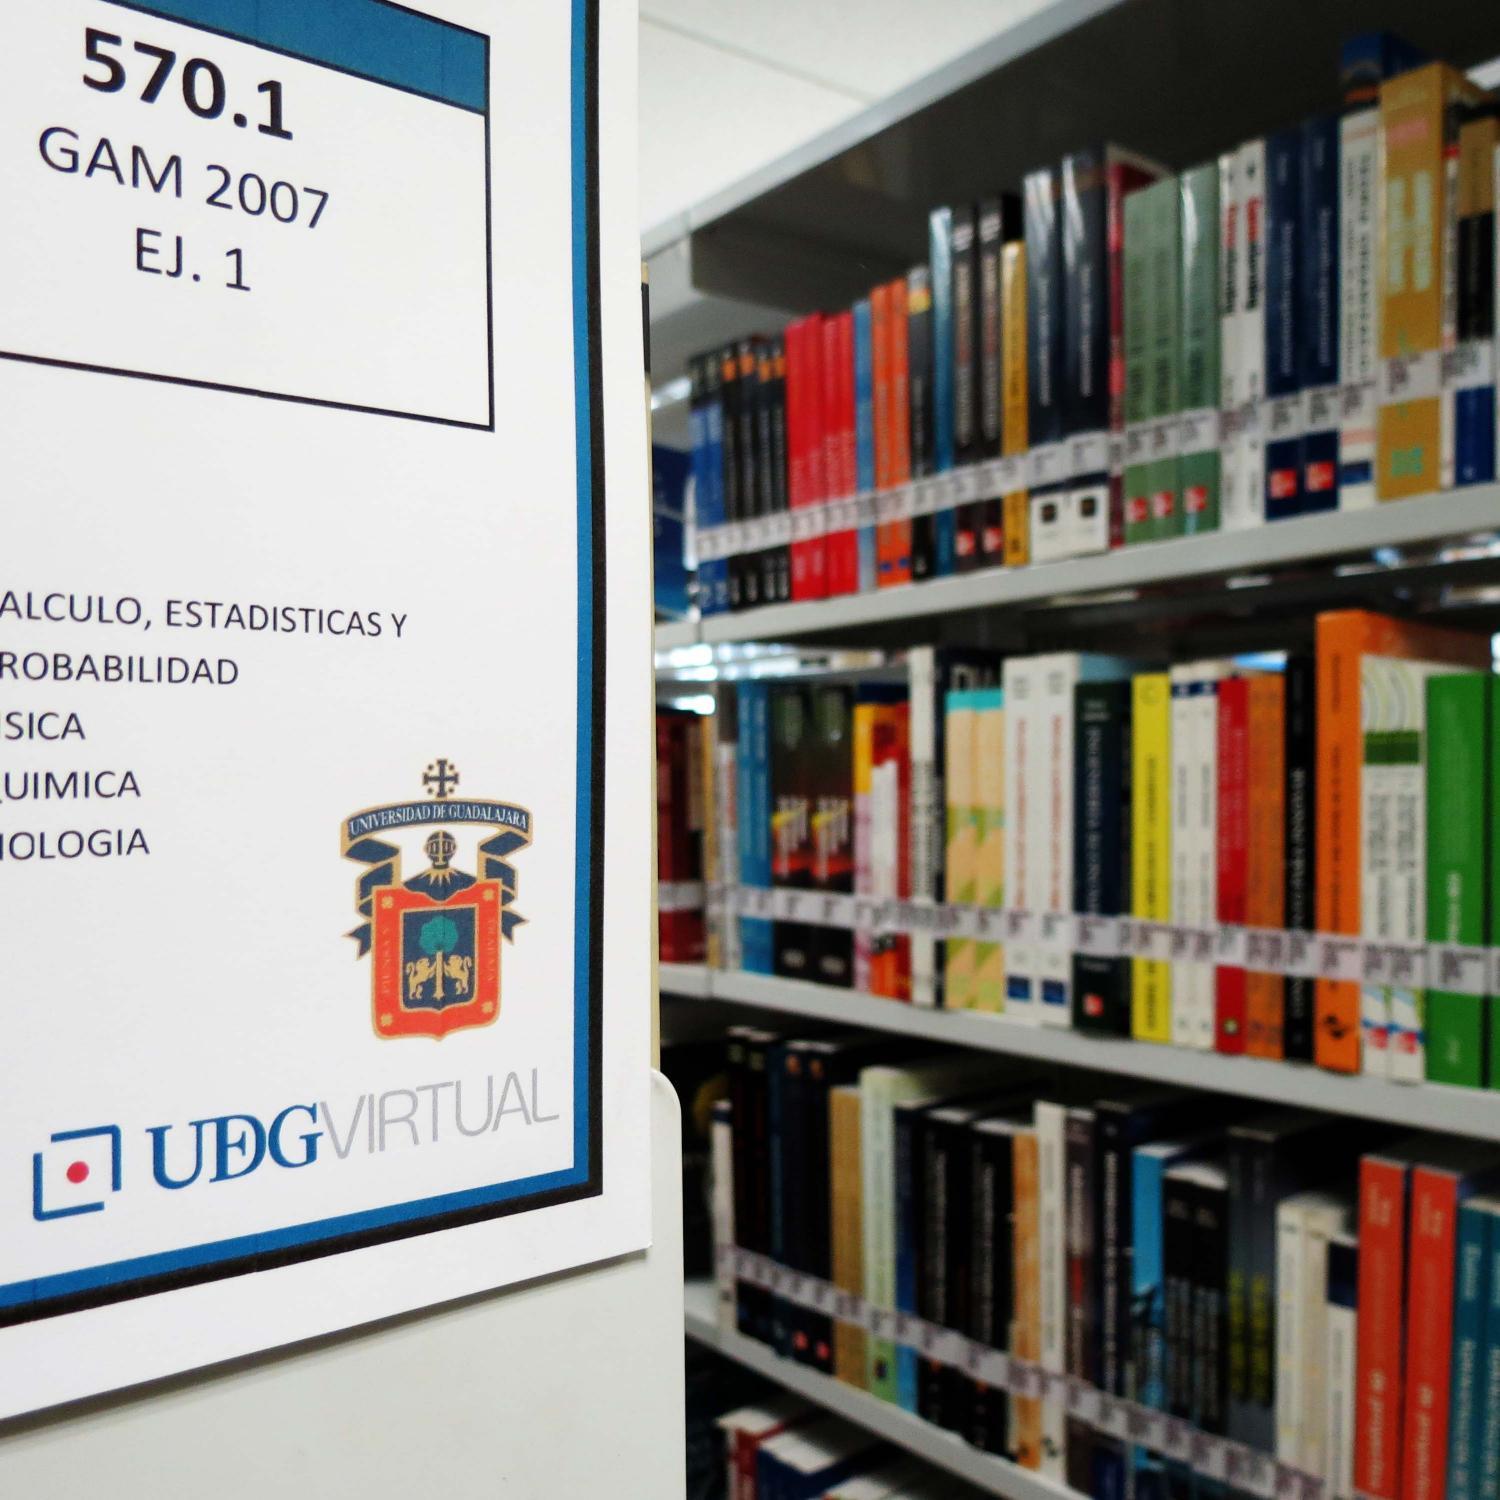 Biblioteca del Sistema de Universidad Virtual, Universidad de Guadalajara, provee servicios y recursos informativos presenciales y virtuales de calidad.